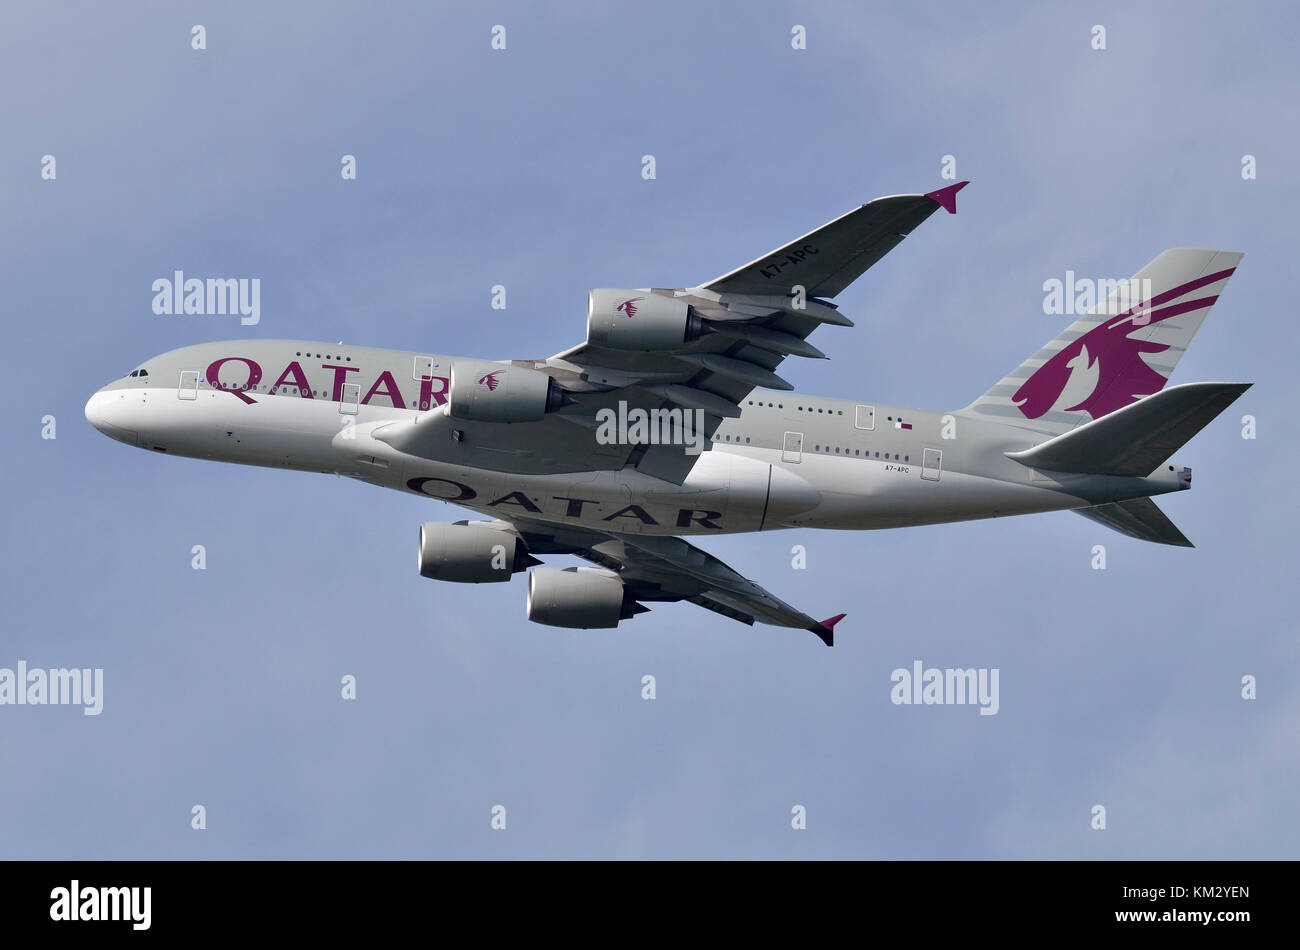 Qatar Airways Airbus A380, l'aéroport de Heathrow, Royaume-Uni. Airbus A380-861 A7-APC est vu en sortir après le décollage. Banque D'Images